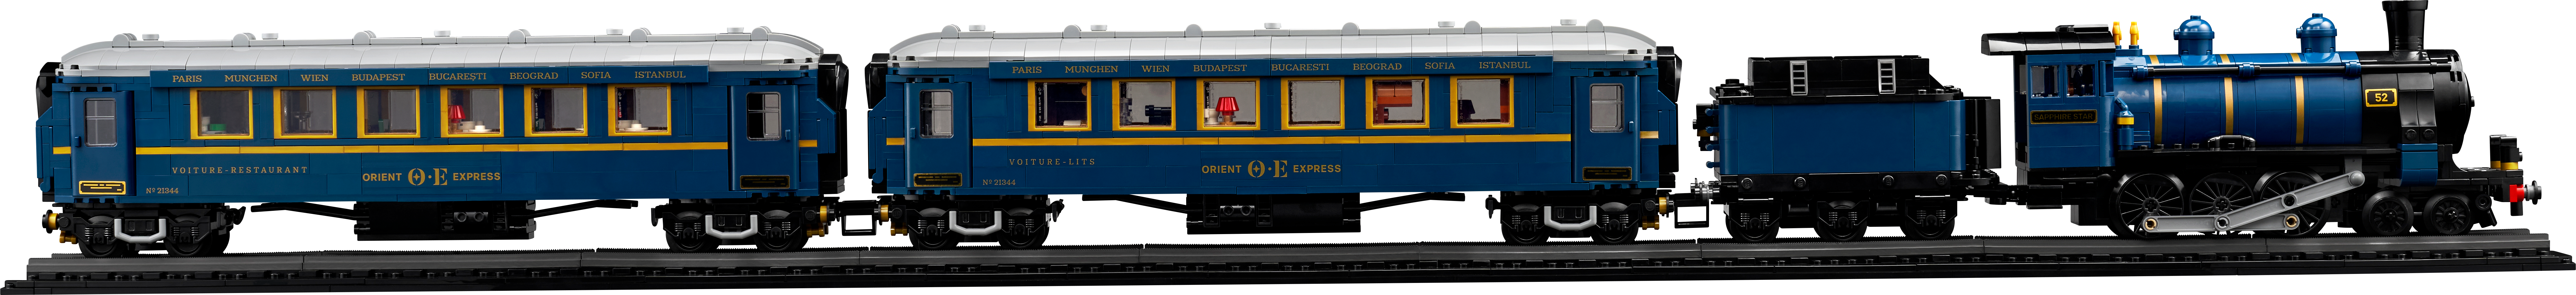 ▻ Nuovo LEGO Ideas 21344 Il Treno Orient-Express: il set è online sullo  Shop - HOTH BRICKS